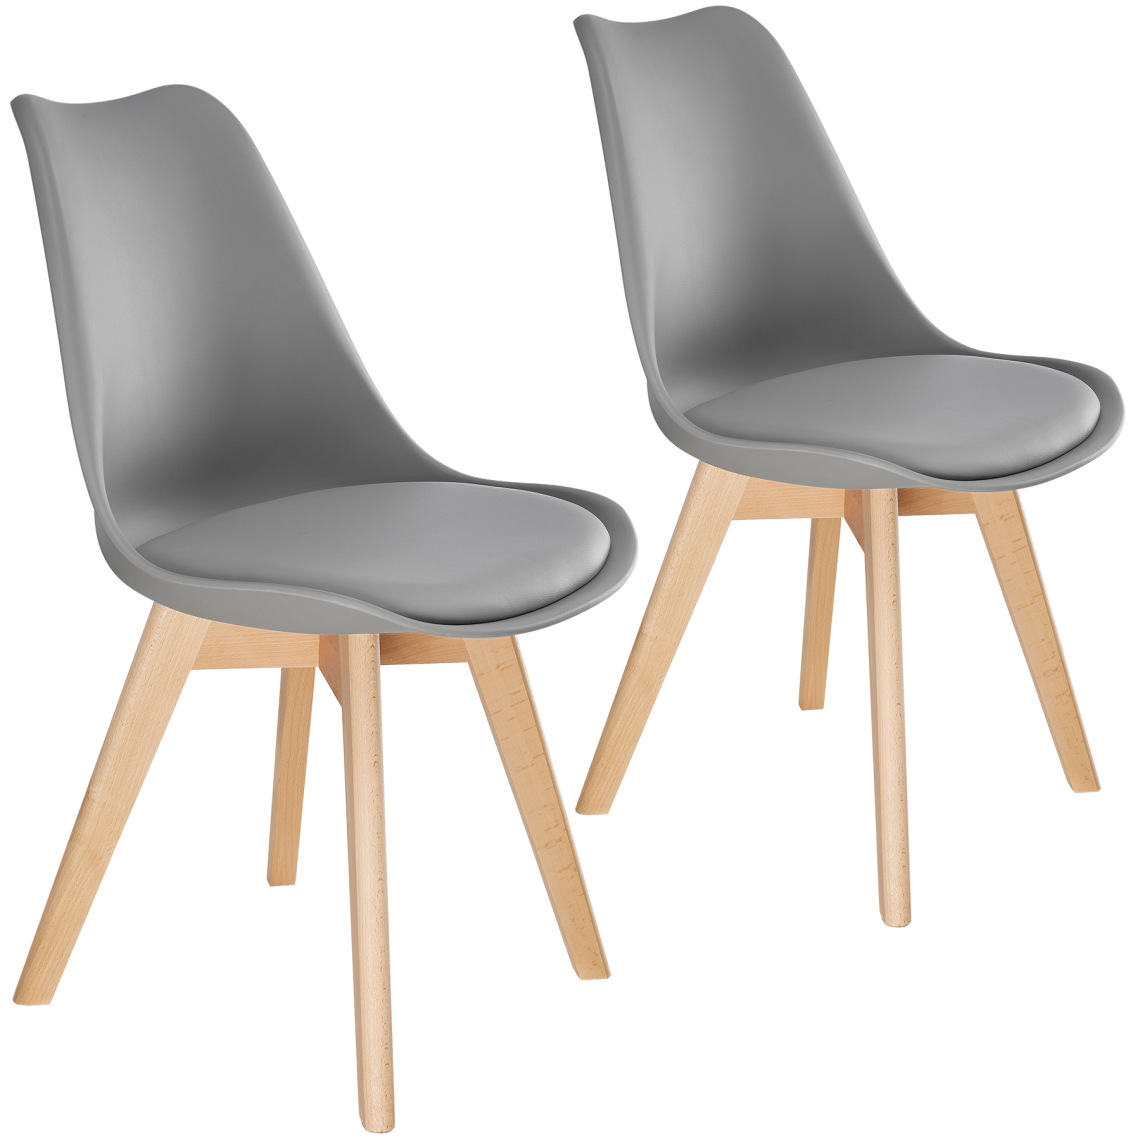 Tectake - 2 Chaises de Salle à Manger FRÉDÉRIQUE Style Scandinave Pieds en Bois Massif Design Moderne - gris - Chaises